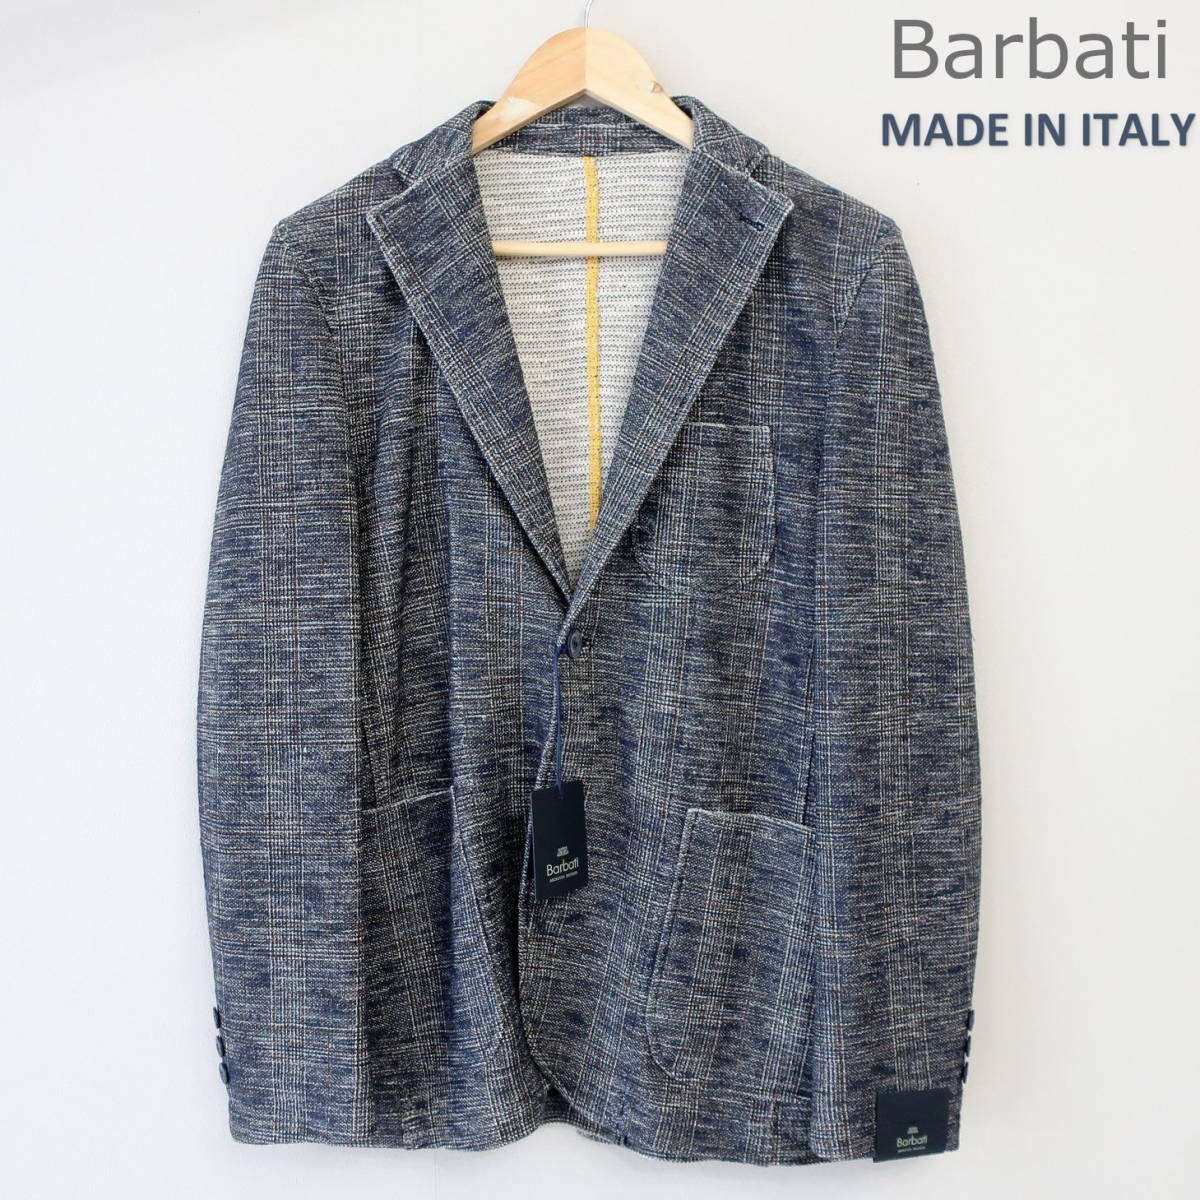 新品 未使用 BARBATI バルバッティ イタリア製 2ボタン テーラードジャケット ブレザー スリム 総柄 ネイビー グレー メンズ 46 Mサイズ